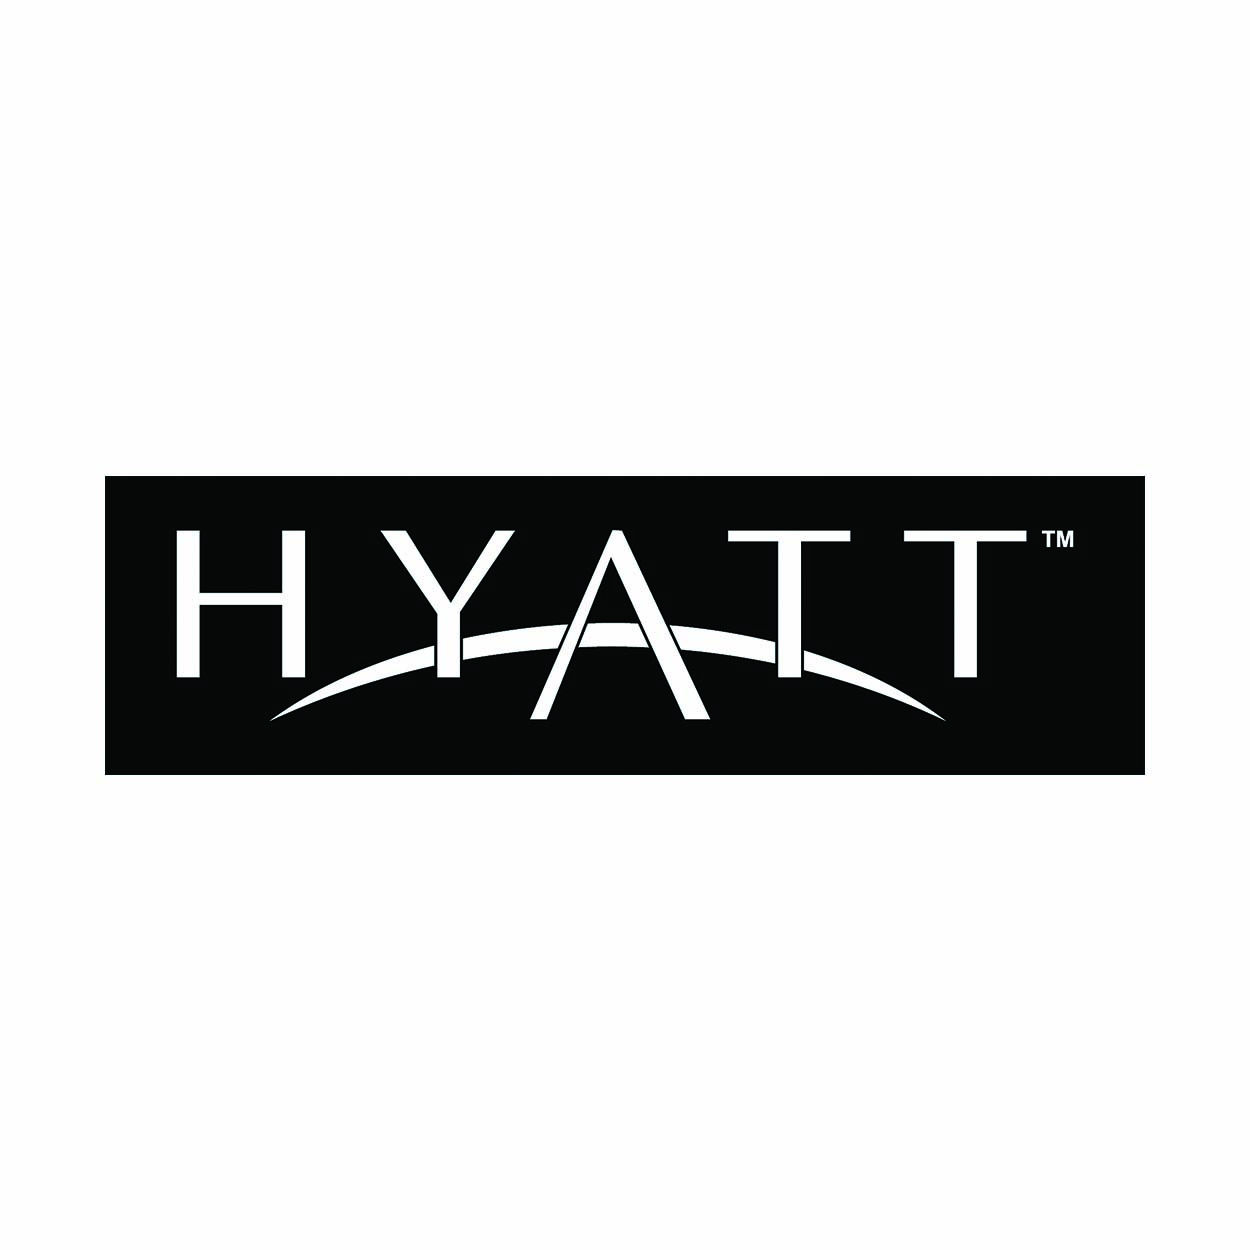 HYATT